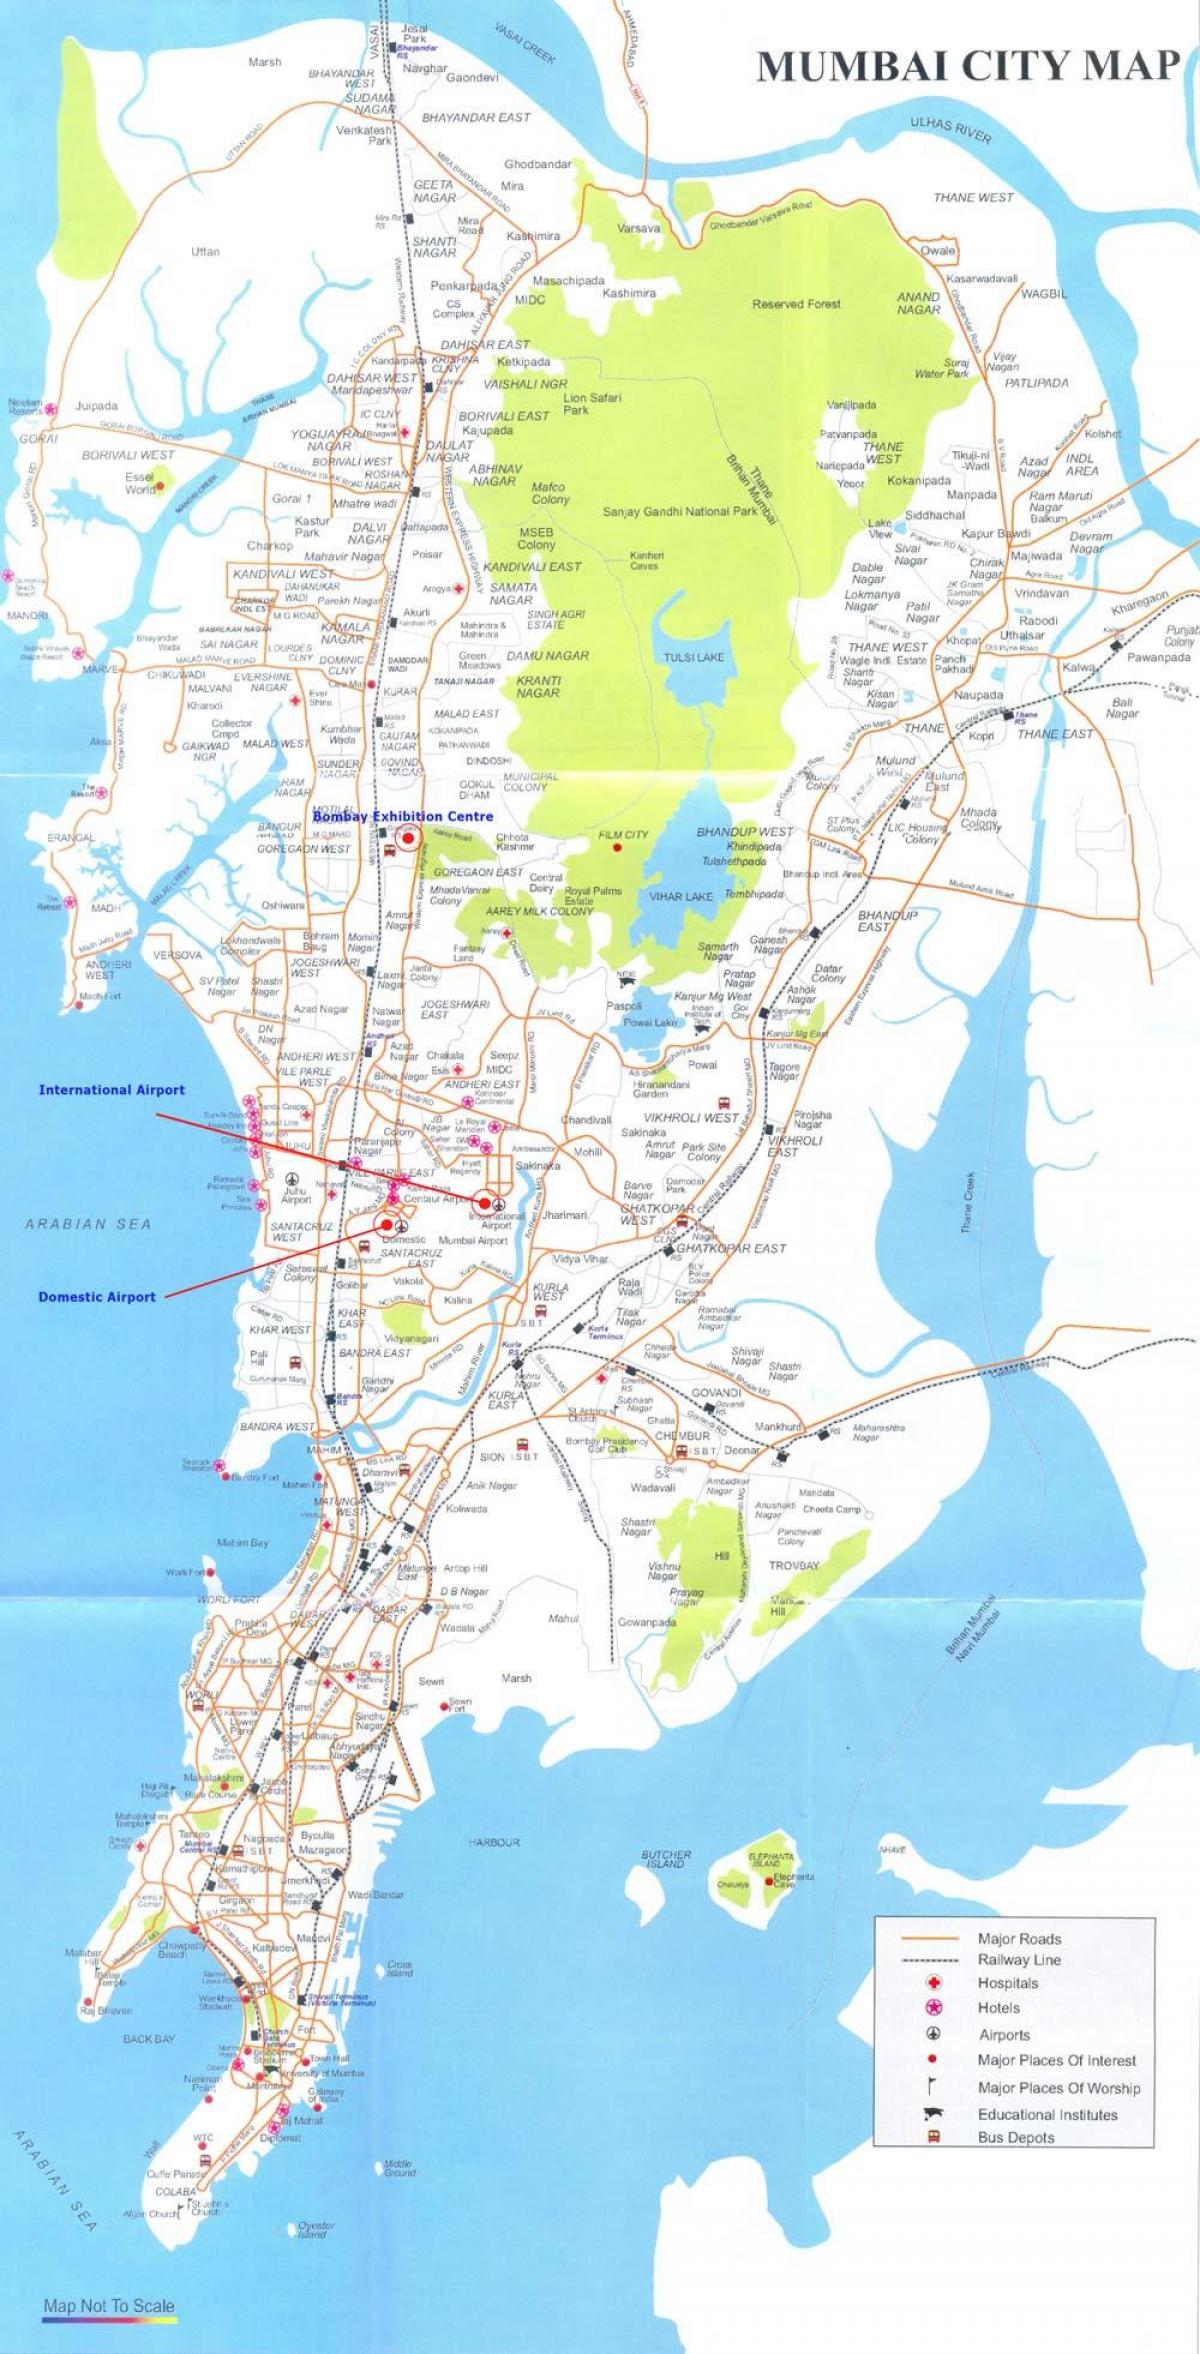 مومباي Borivali خريطة